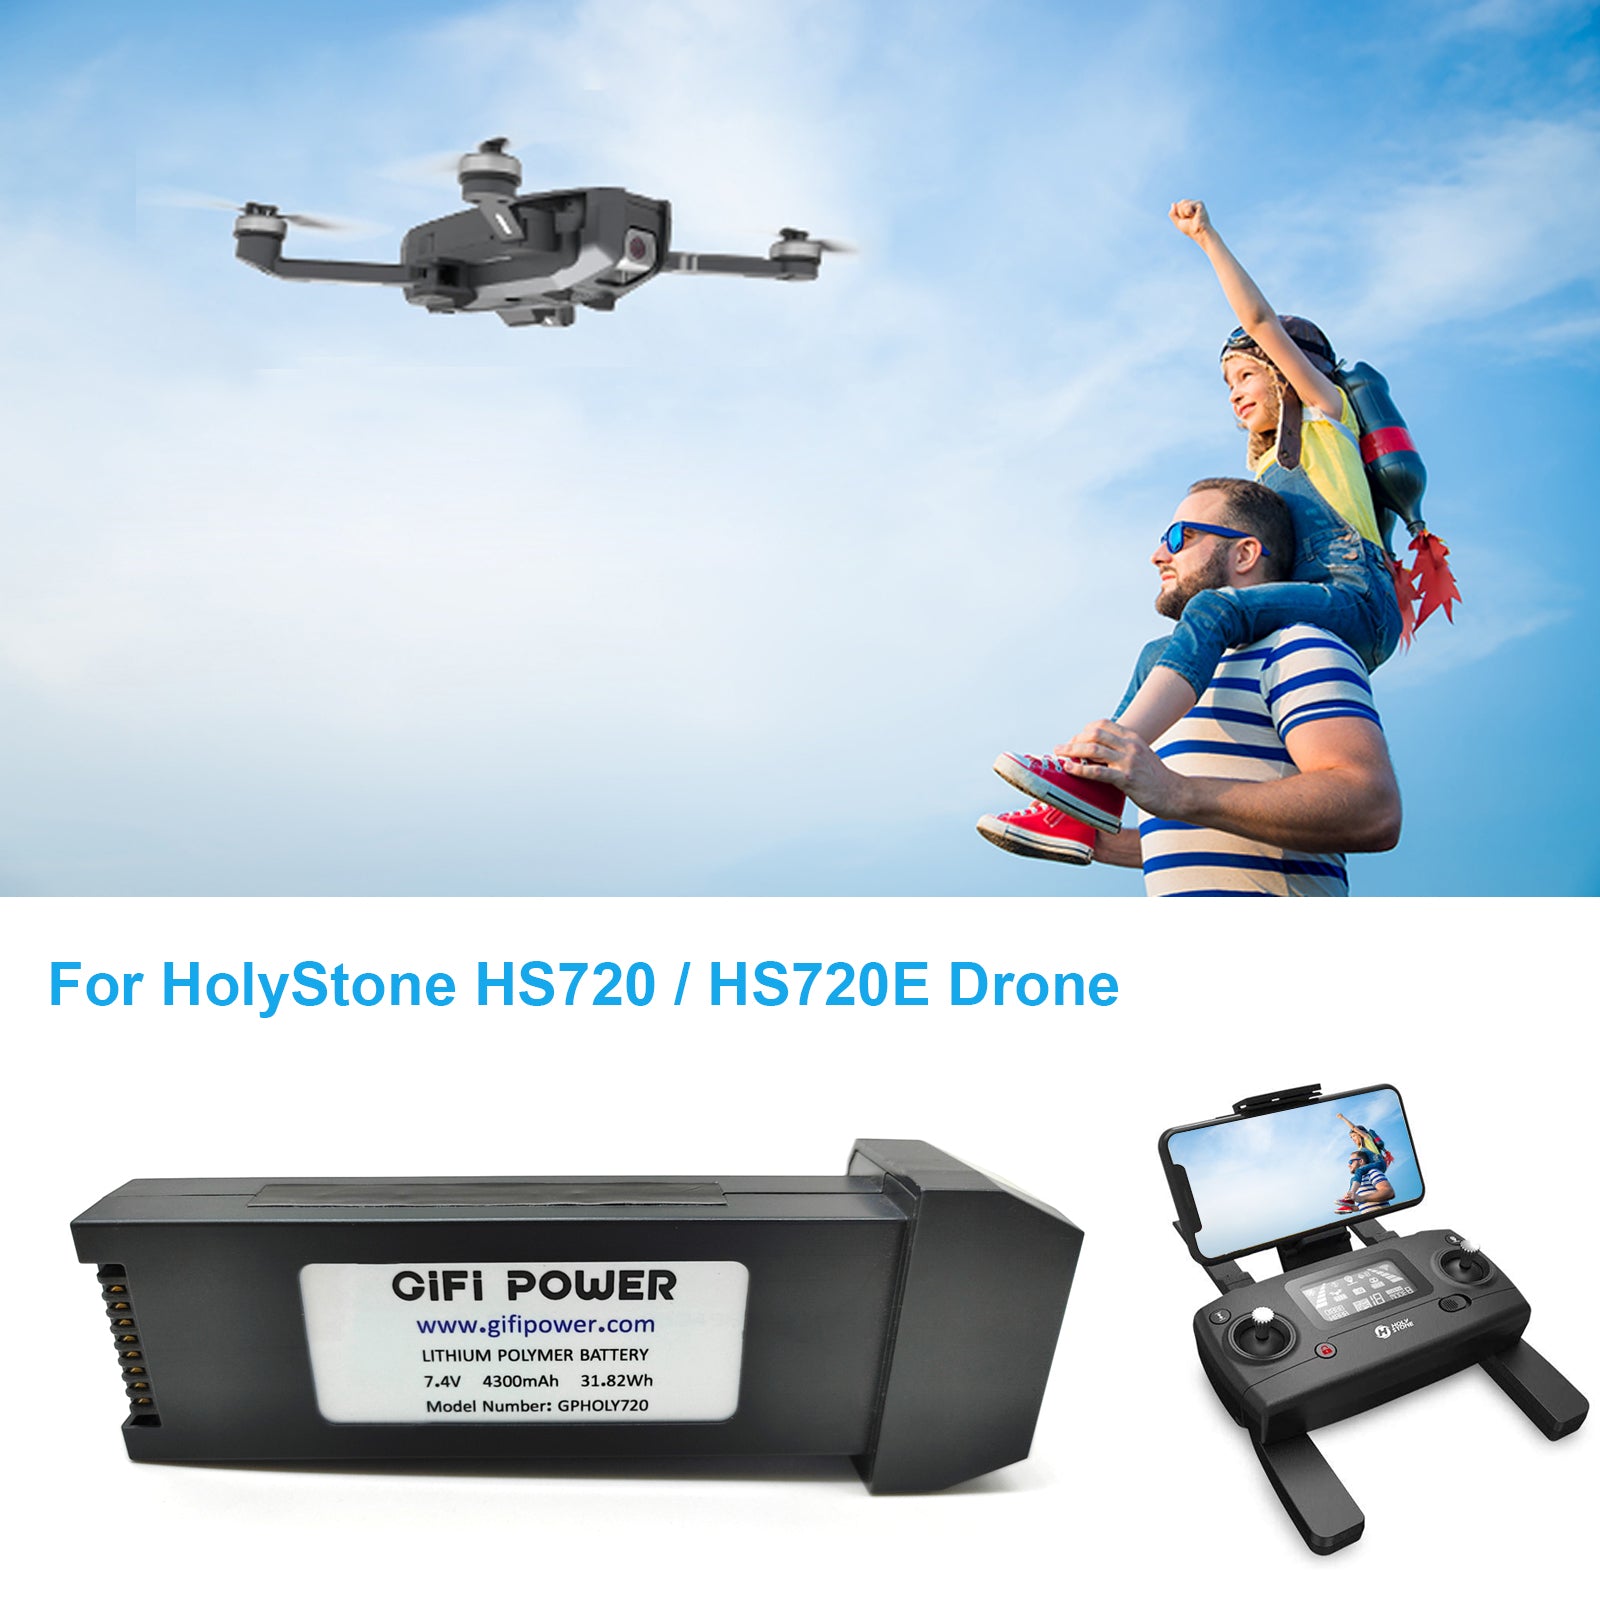 7.4V 4300mAh Lithium Spare Battery for HolyStone HS720 & HS720E GPS Quadcopter Drone